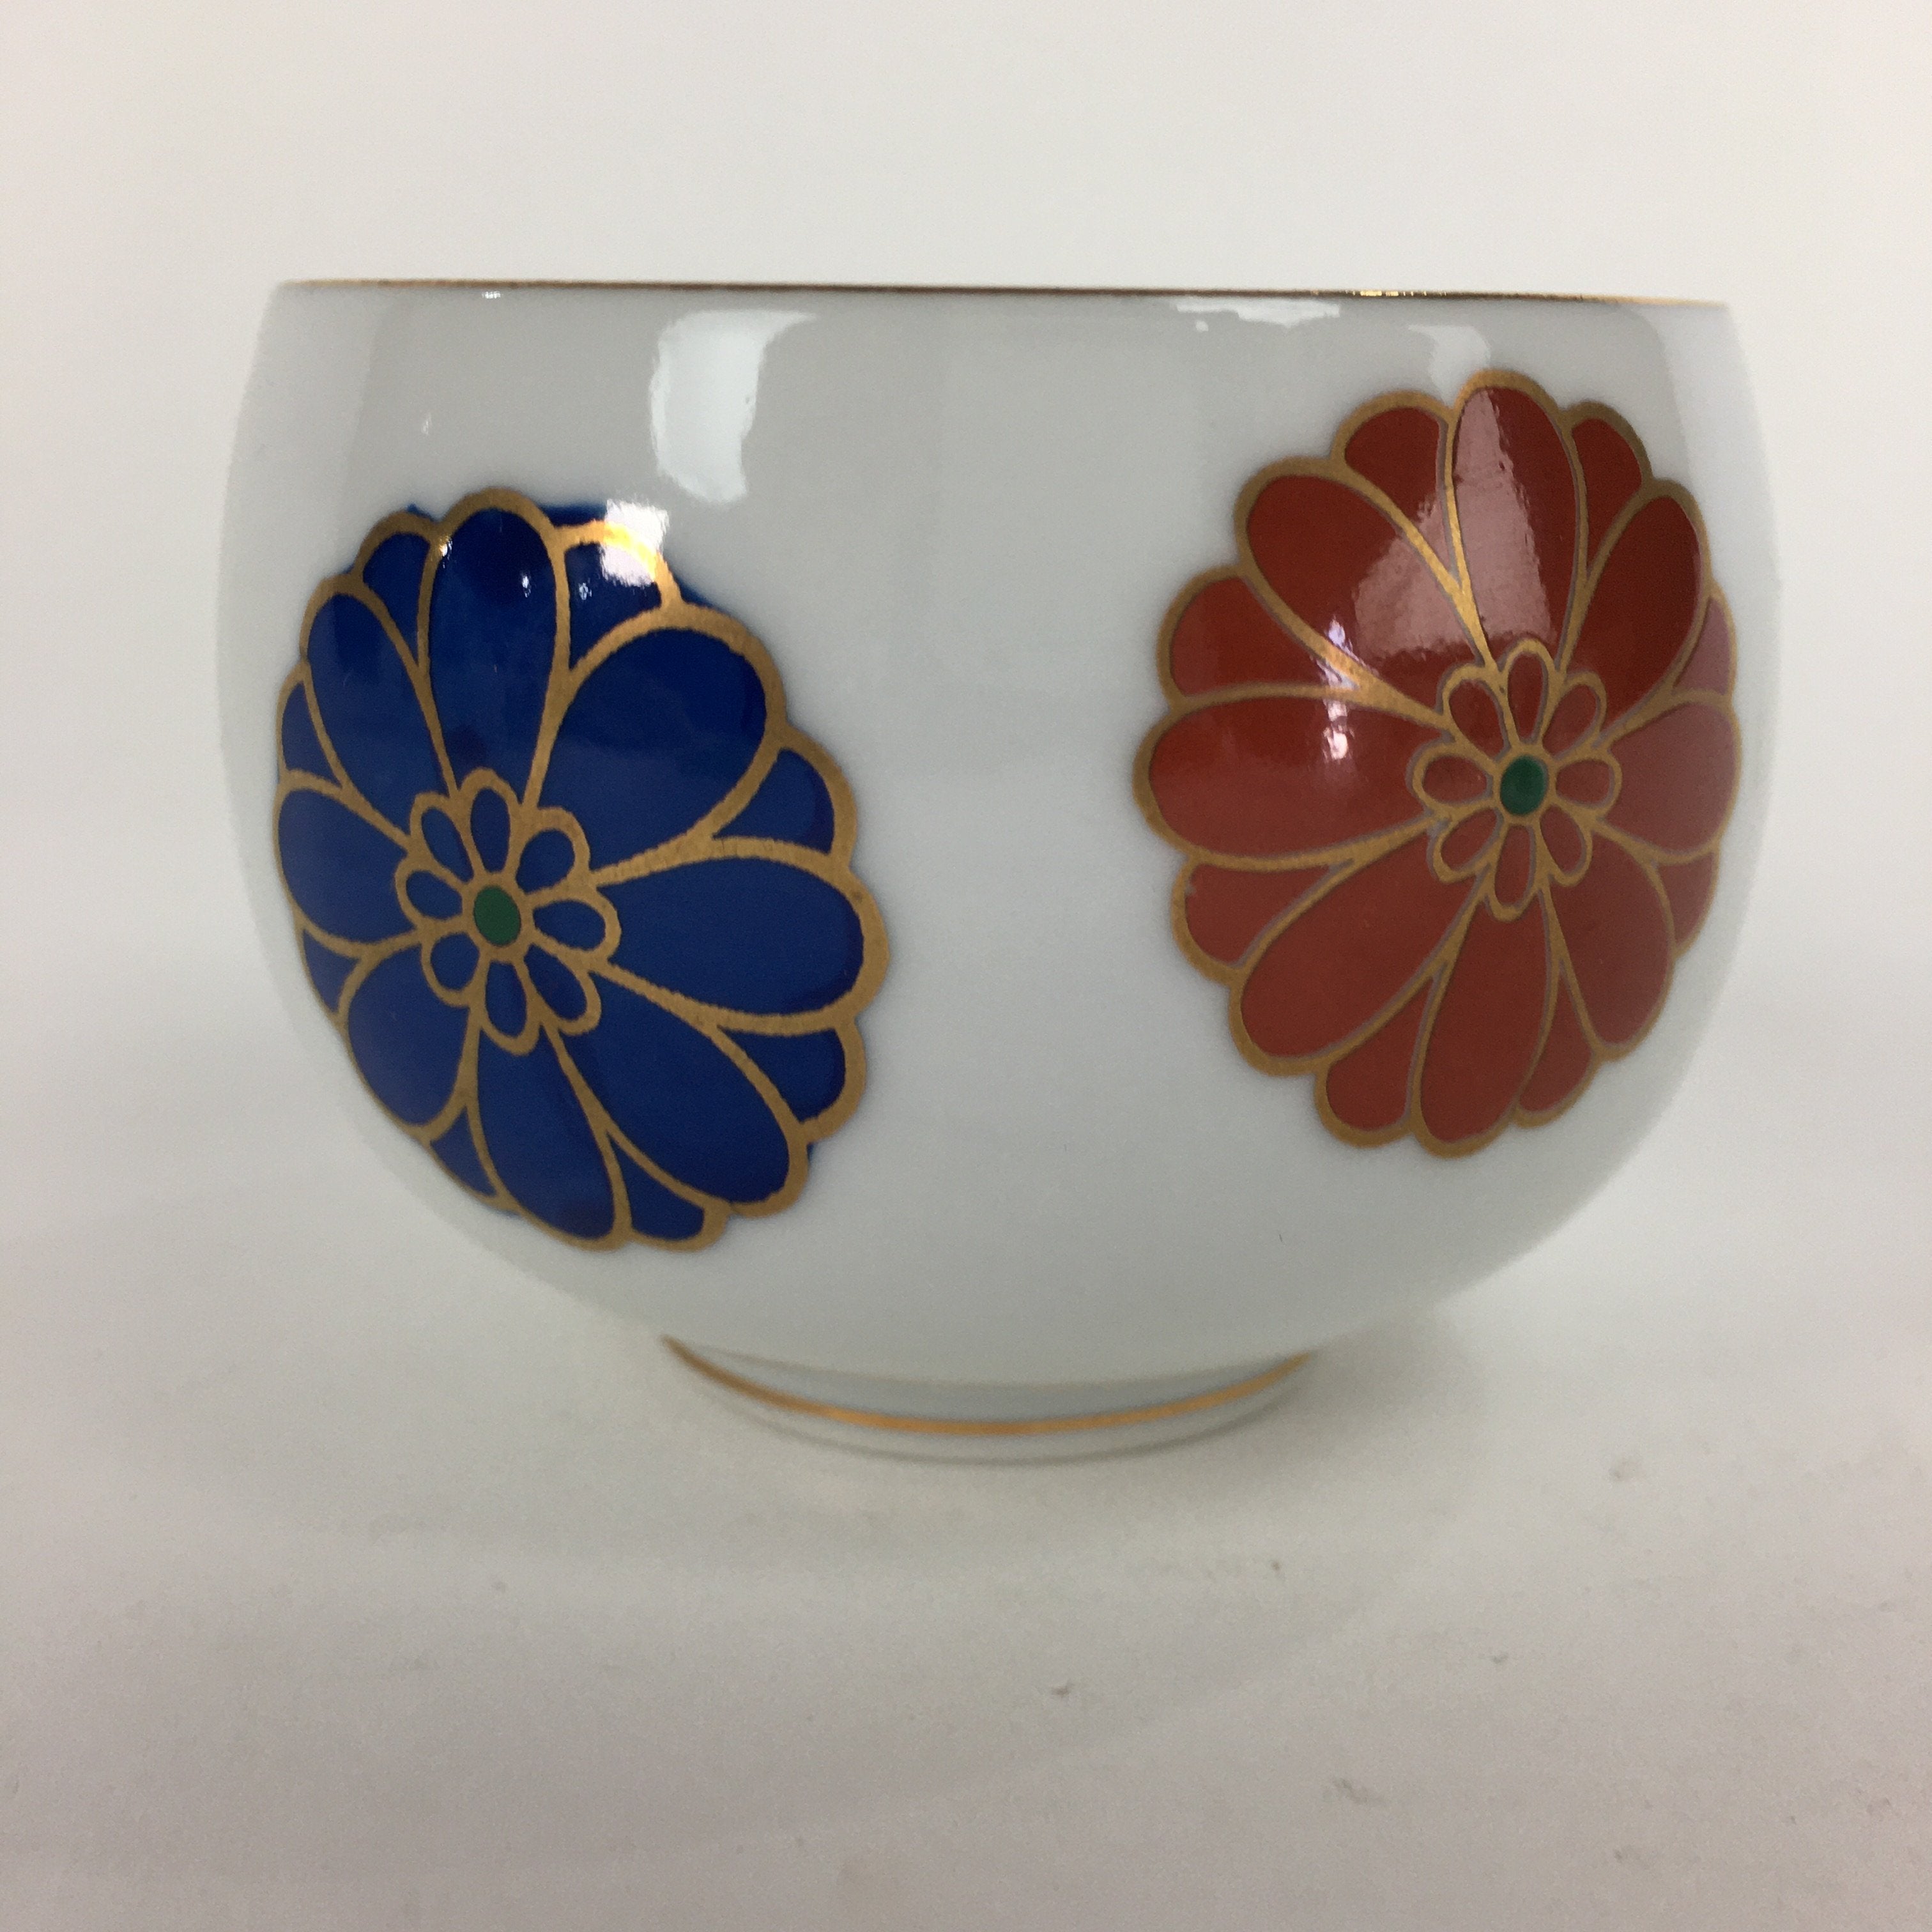 Japanese Porcelain Teacup Yunomi Vtg Chrysanthemum White Sencha TC195